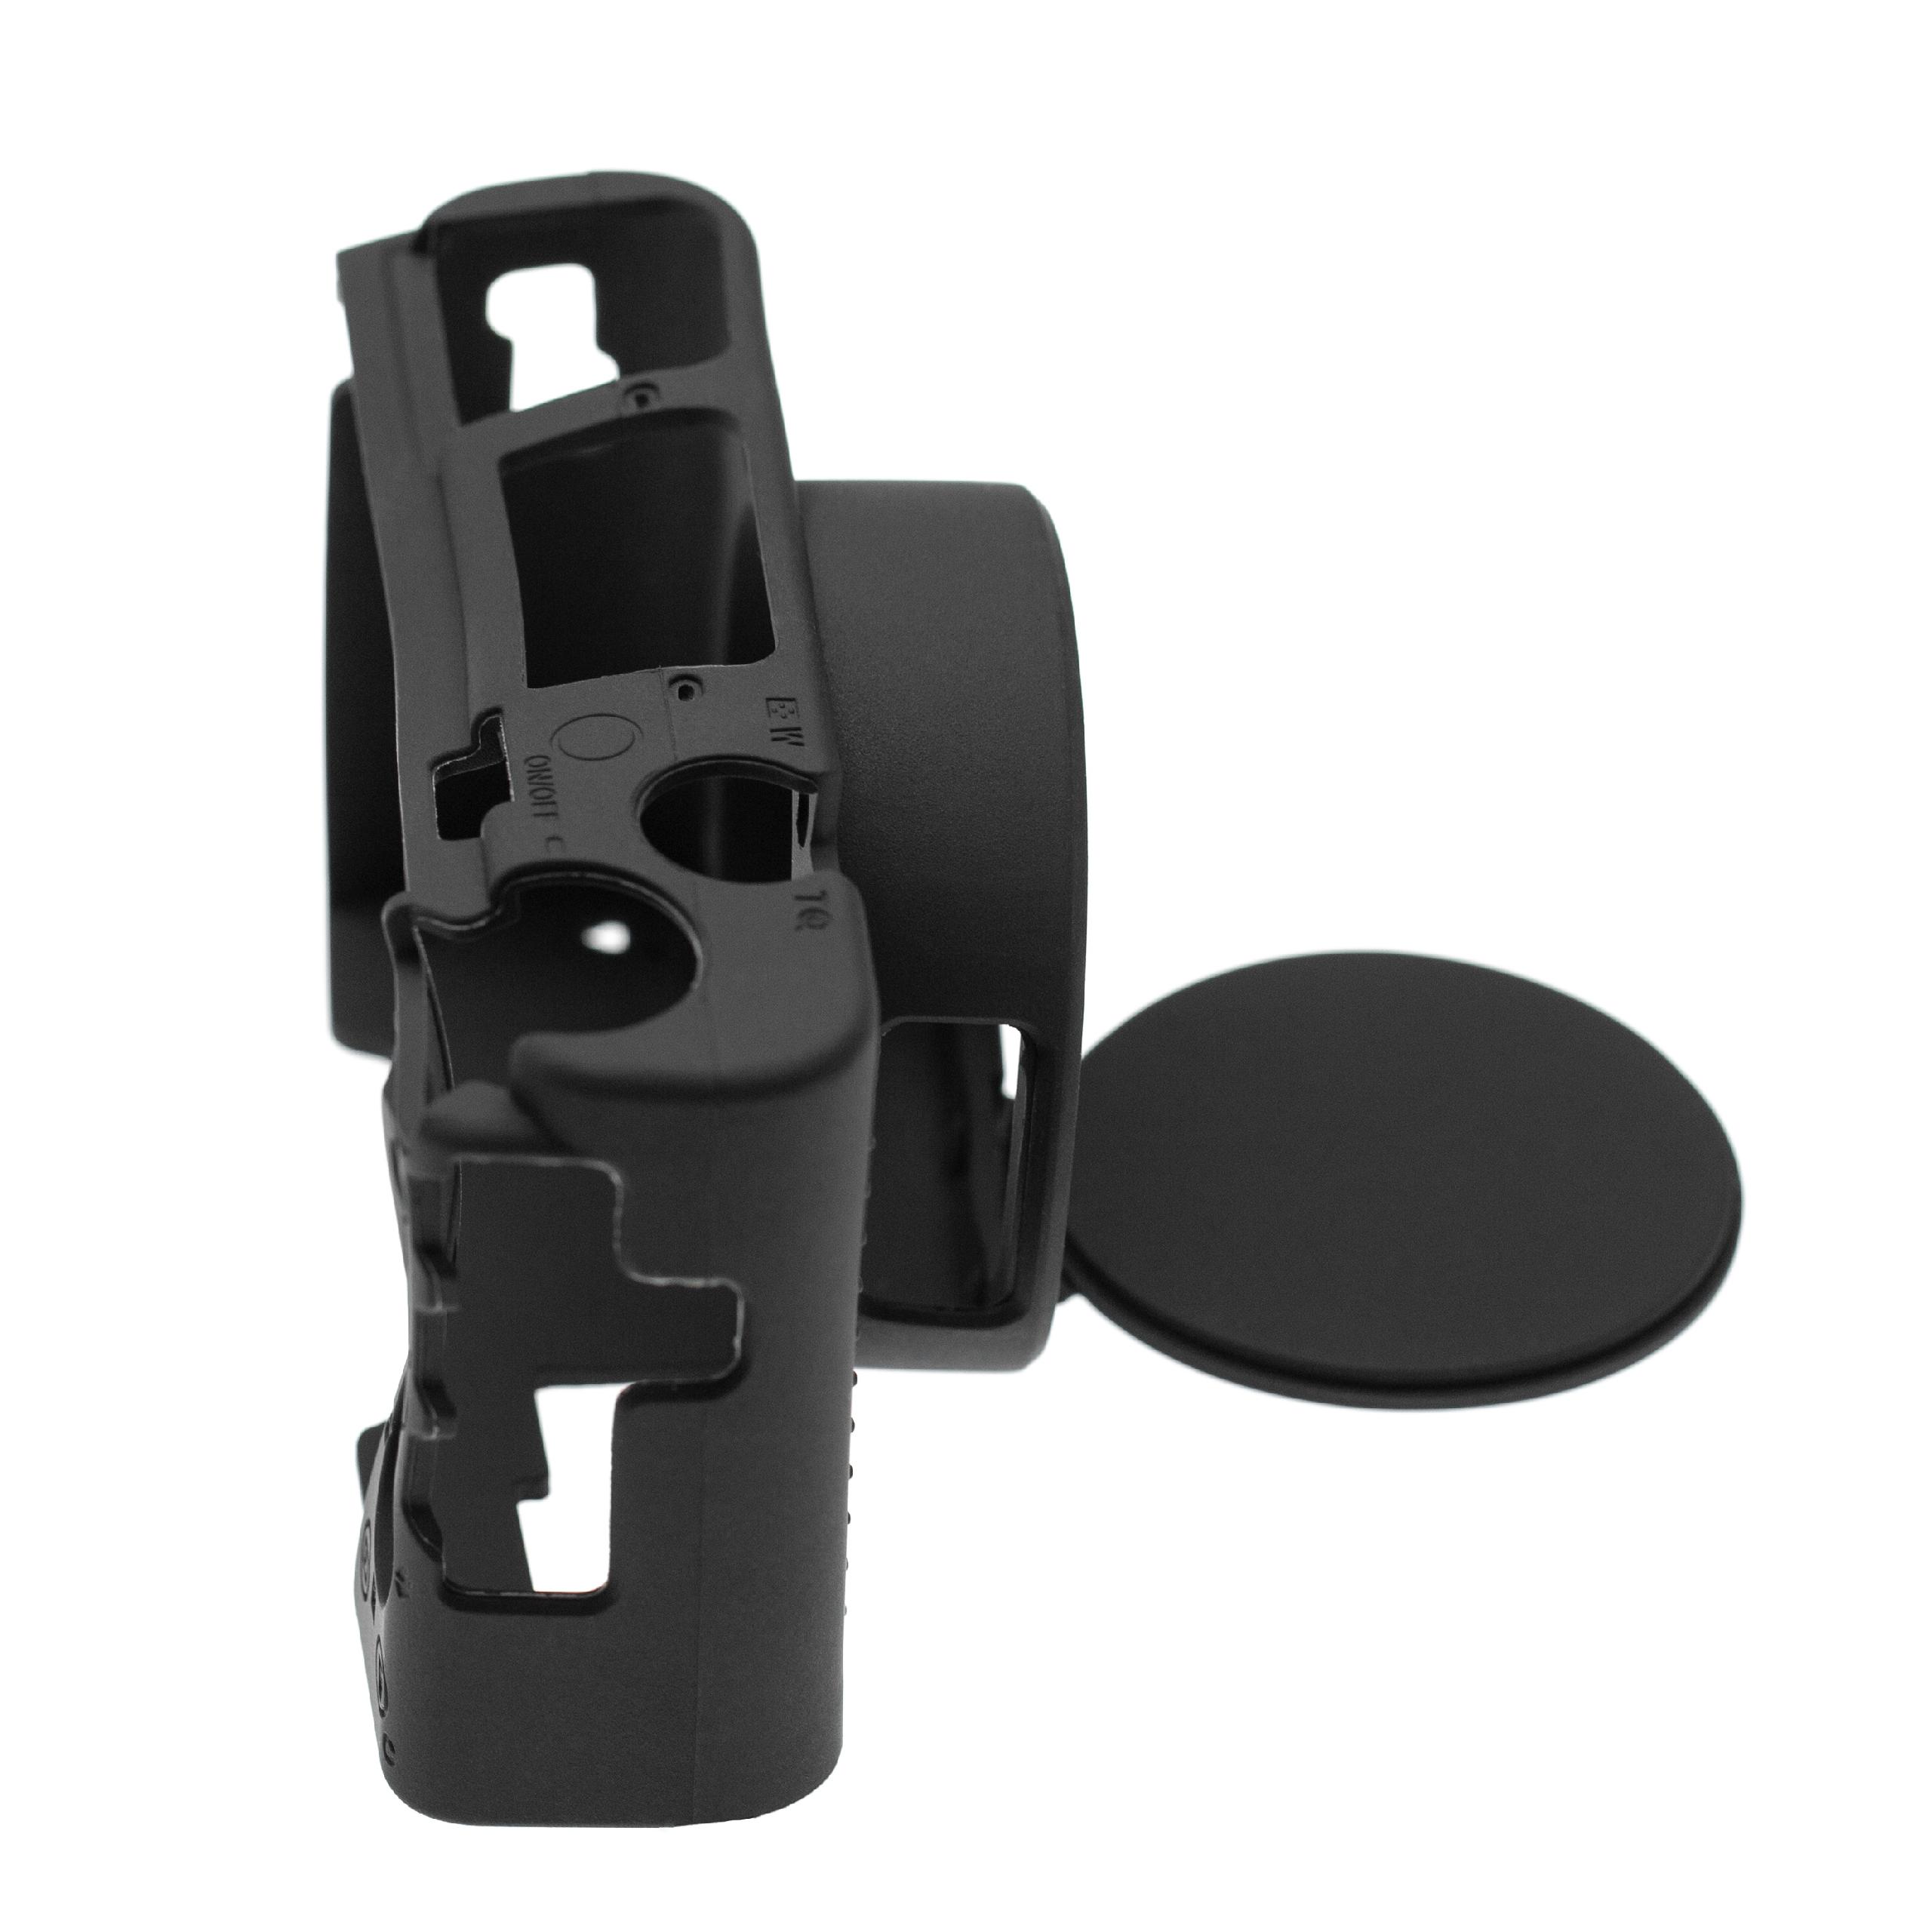 Custodia protettiva per Sony Cybershot DSC-RX100M7 fotocamera - silicone nero, con protezione extra